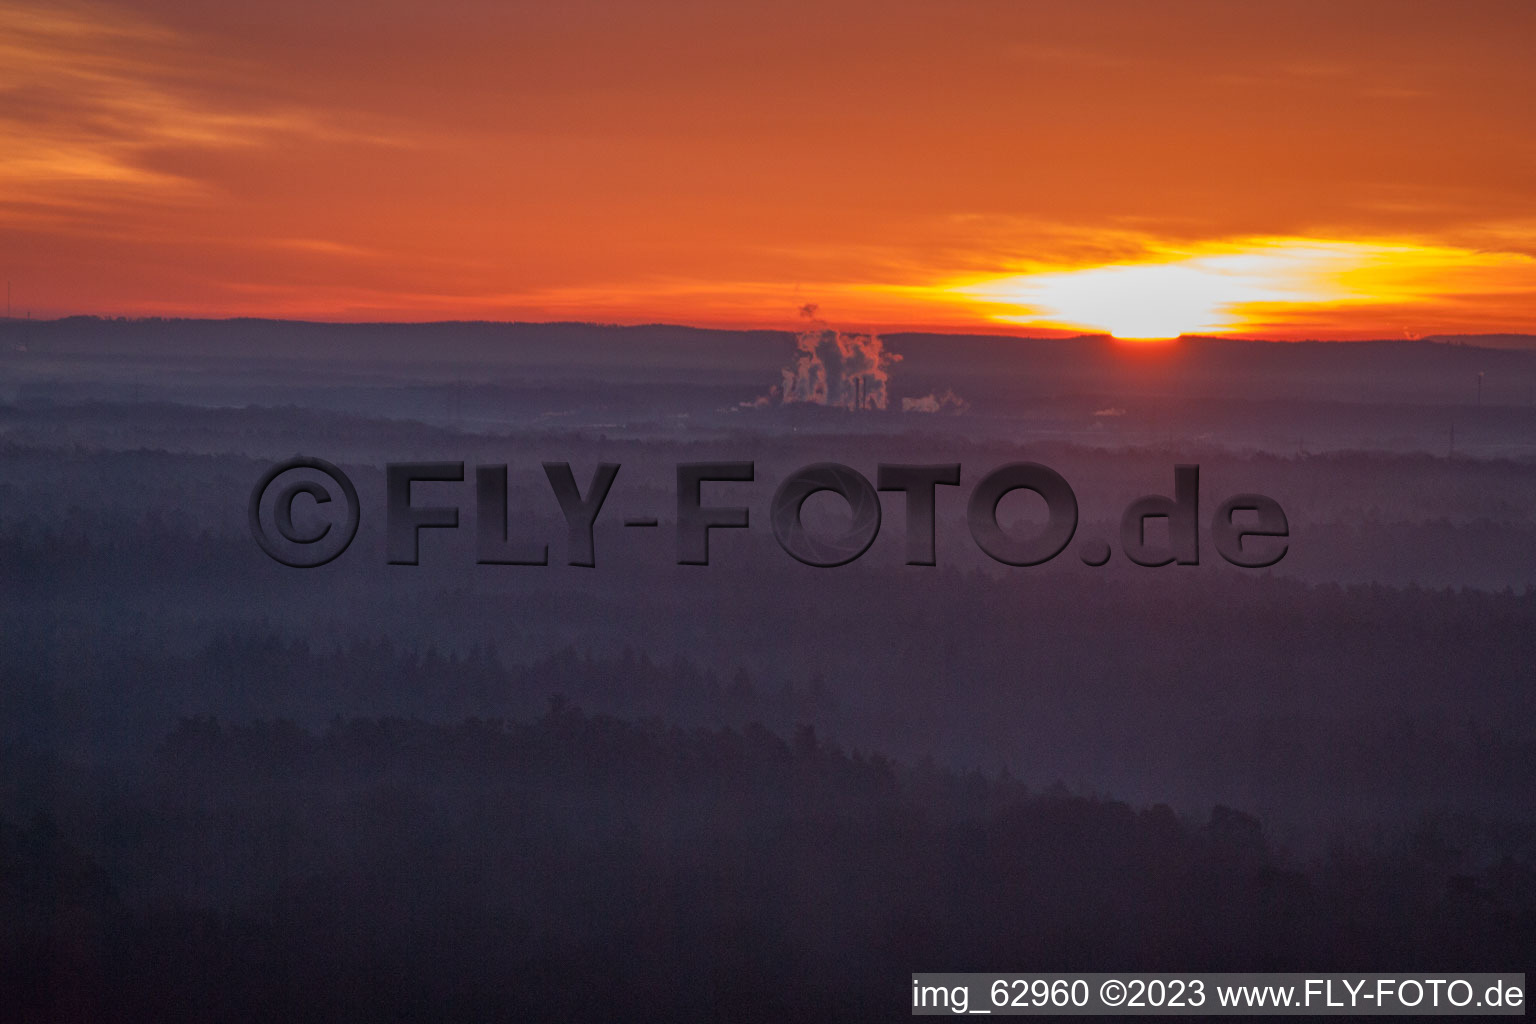 Minfeld, Otterbachtal im Bundesland Rheinland-Pfalz, Deutschland aus der Luft betrachtet